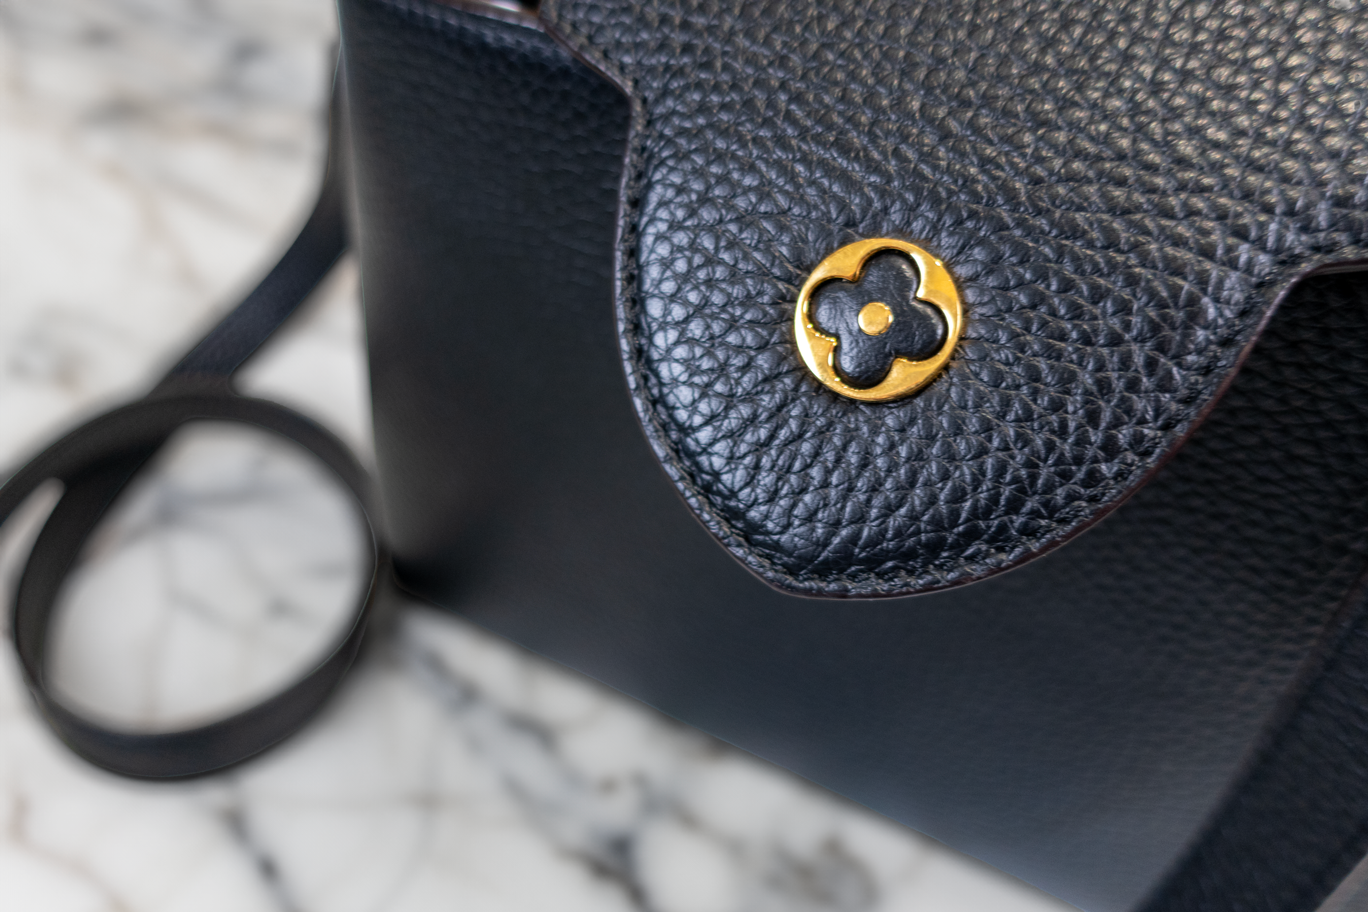 Louis Vuitton Capucines BB Taurillon Leather Noir Shoulder Bag